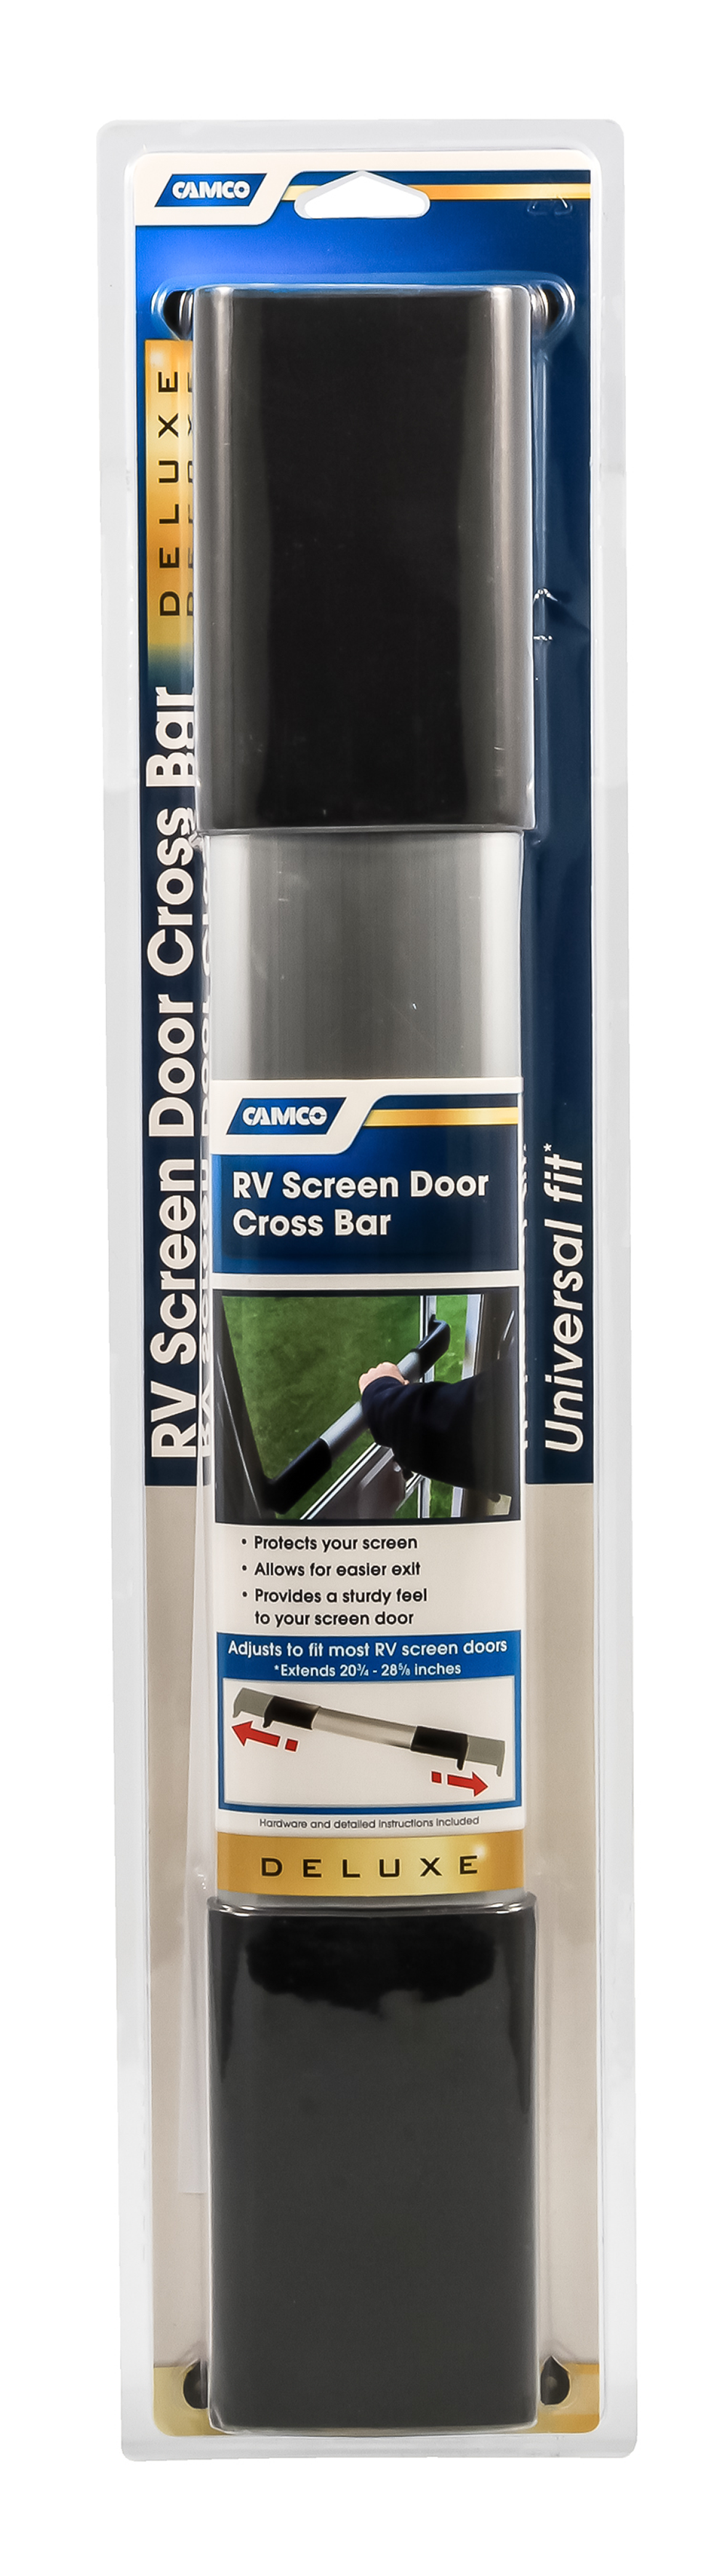 RV Screen Door Cross Bar - Deluxe - Black Handles